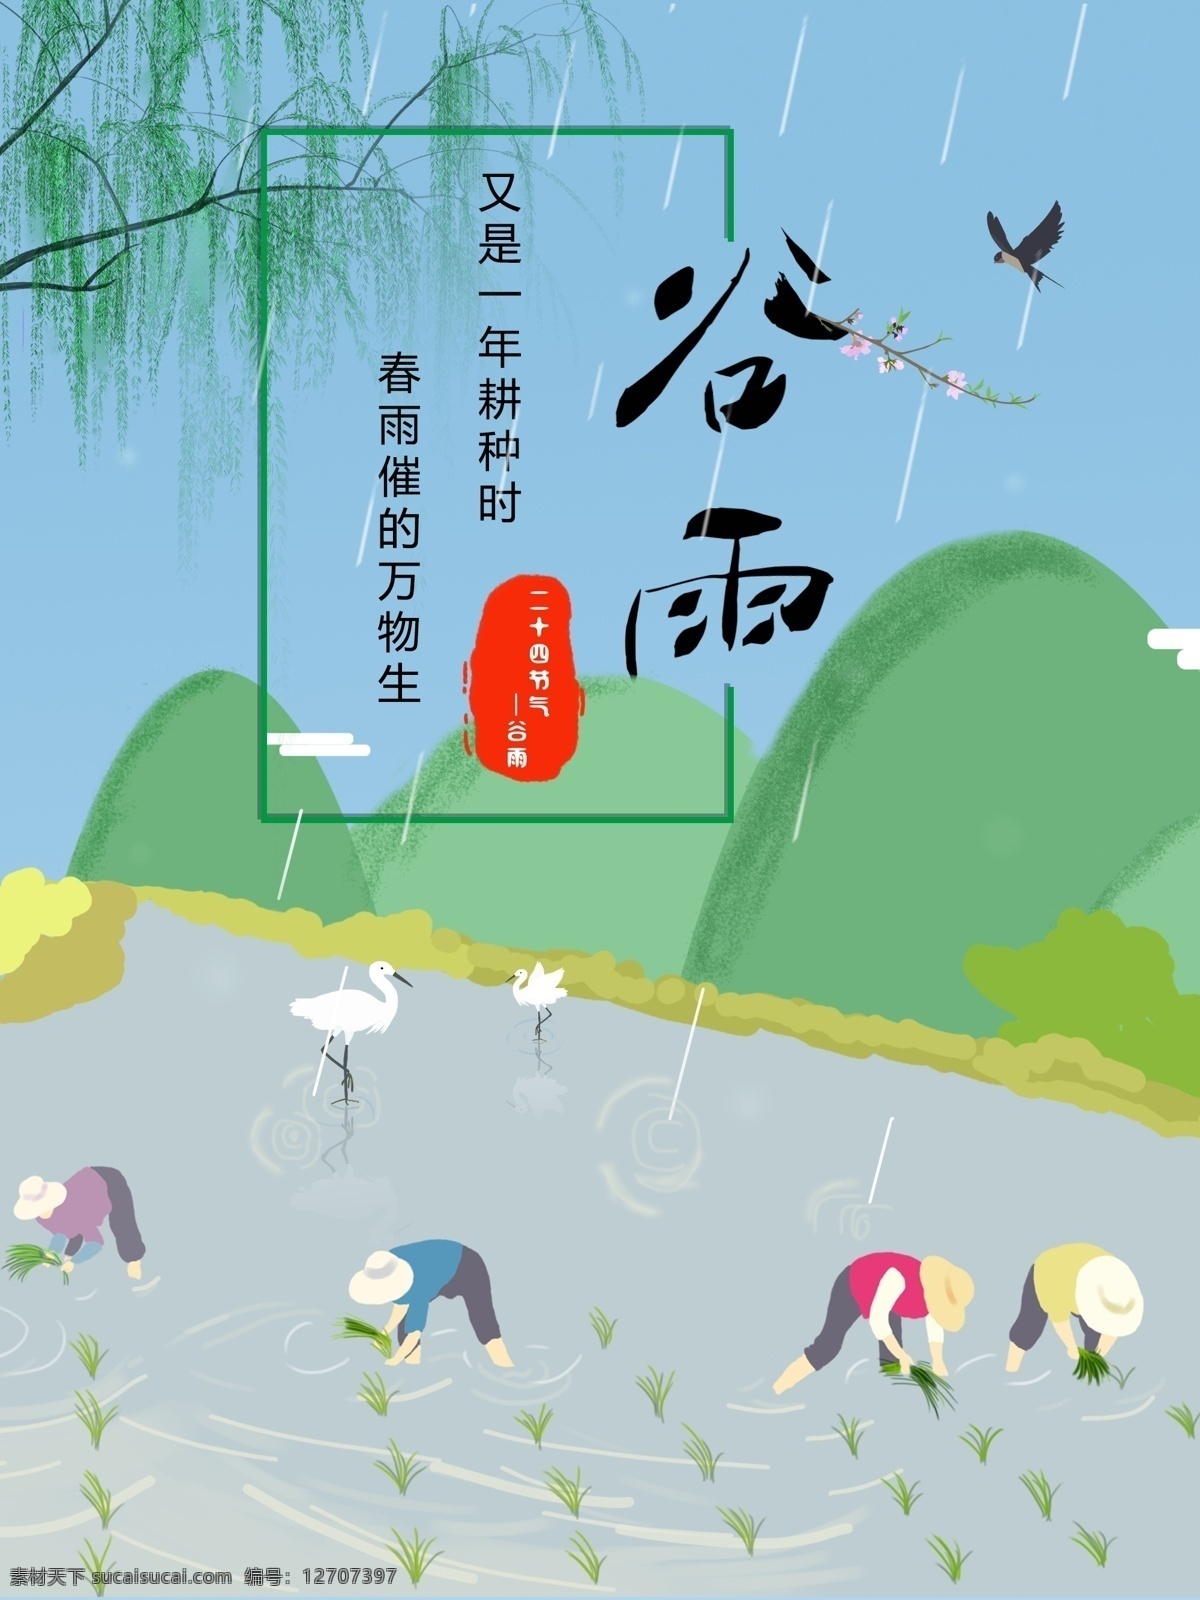 春天 谷雨 插秧 农民 节气 节日 海报 燕子 单页 dm 柳树